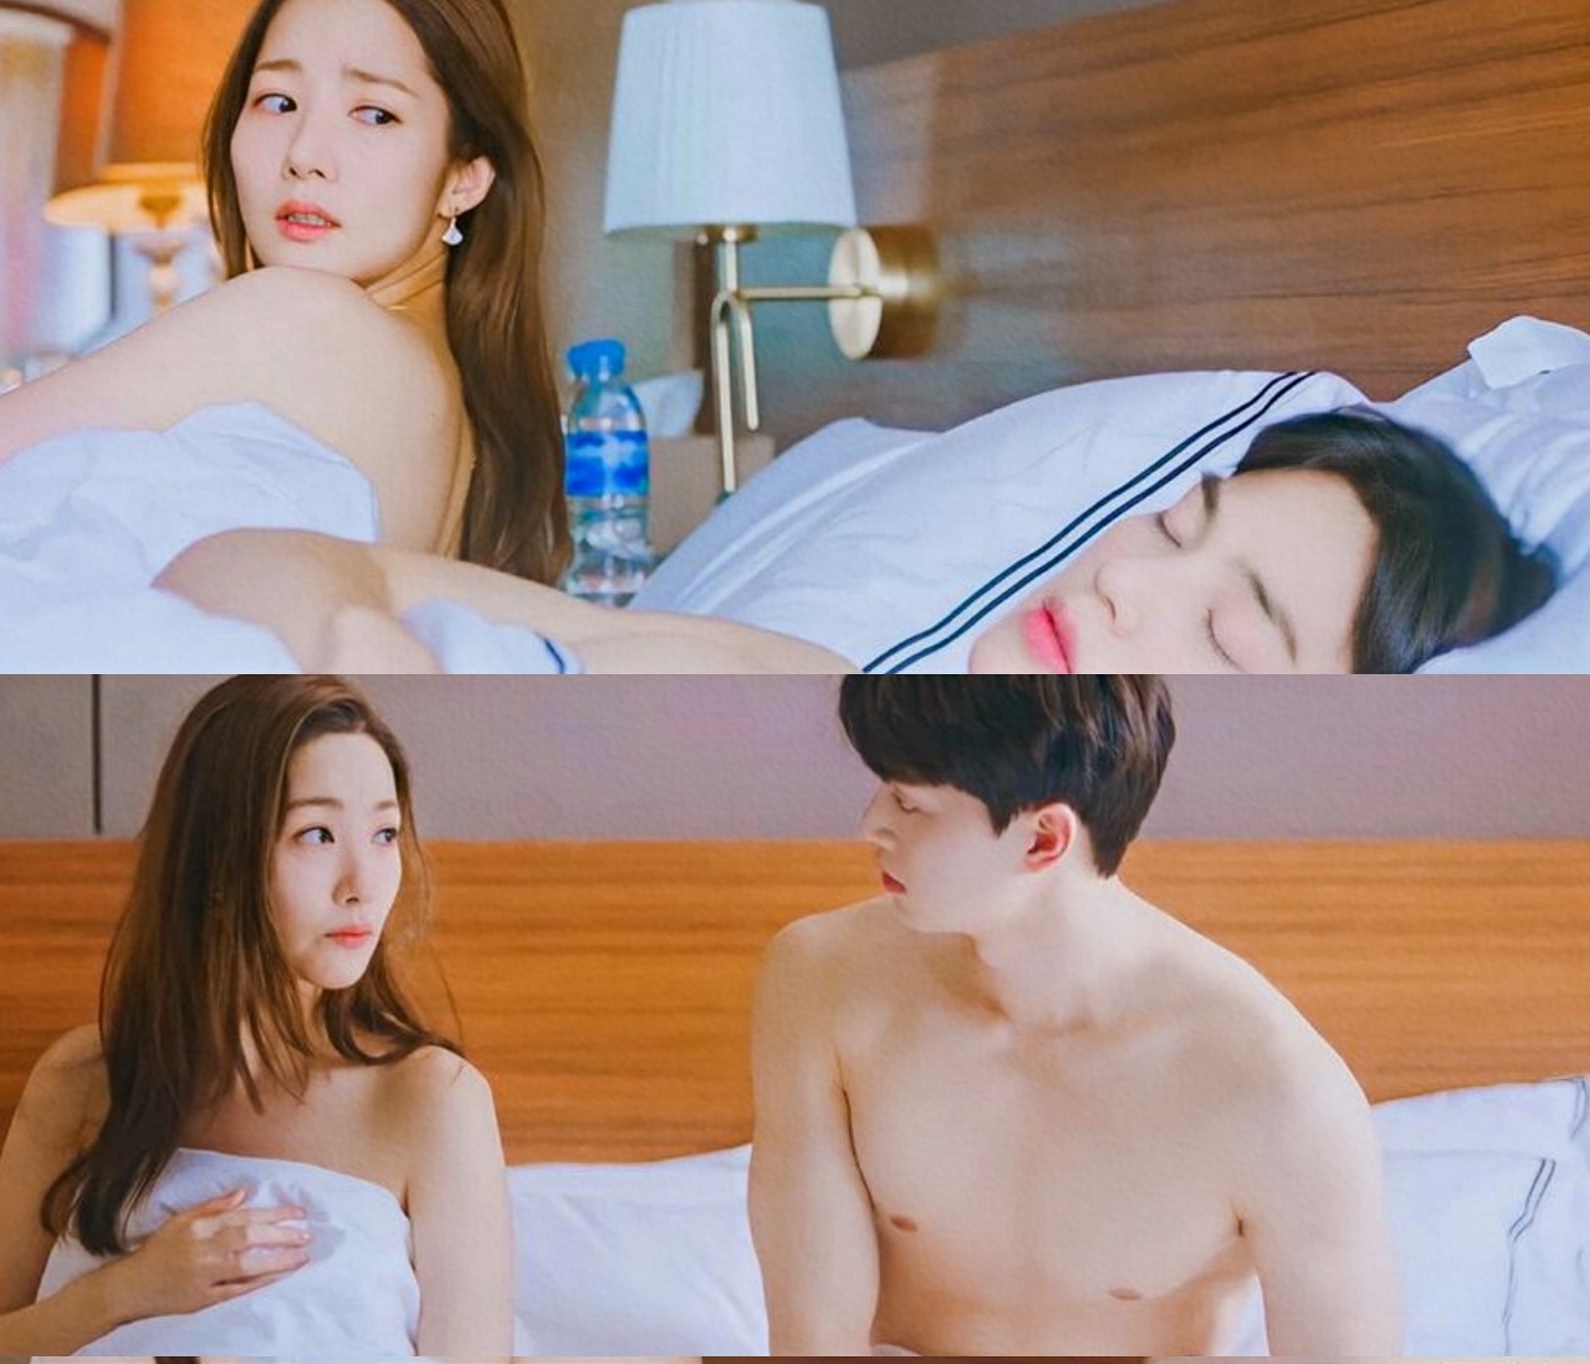 Phim Hàn về tình yêu công sở gần đây: Park Min Young gây sốc vì cảnh giường chiếu từ tập 1, em út SNSD còn bạo hơn